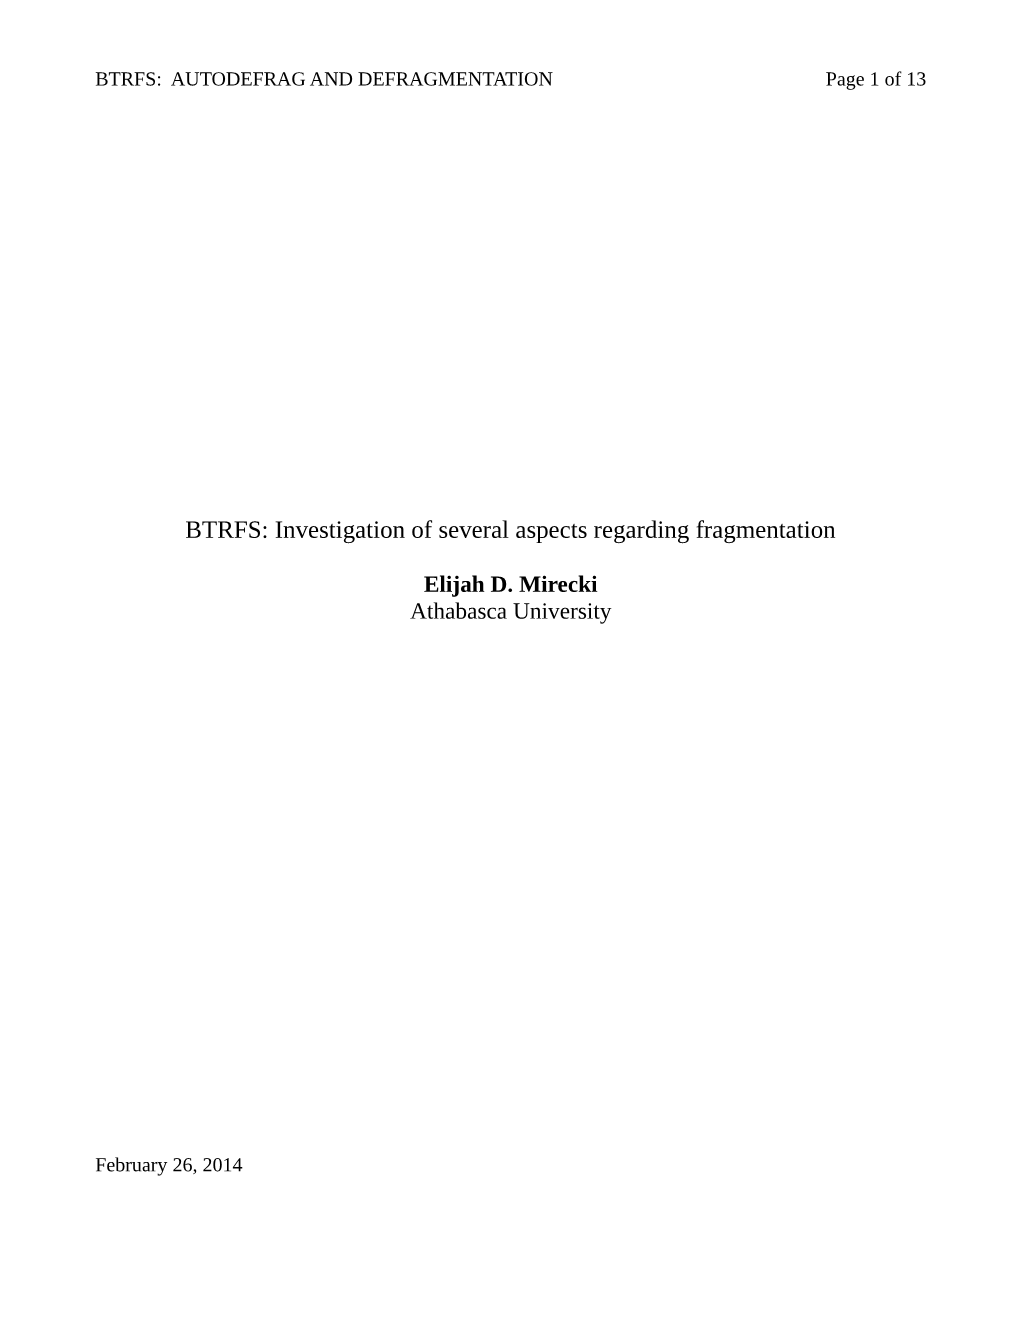 BTRFS: Investigation of Several Aspects Regarding Fragmentation